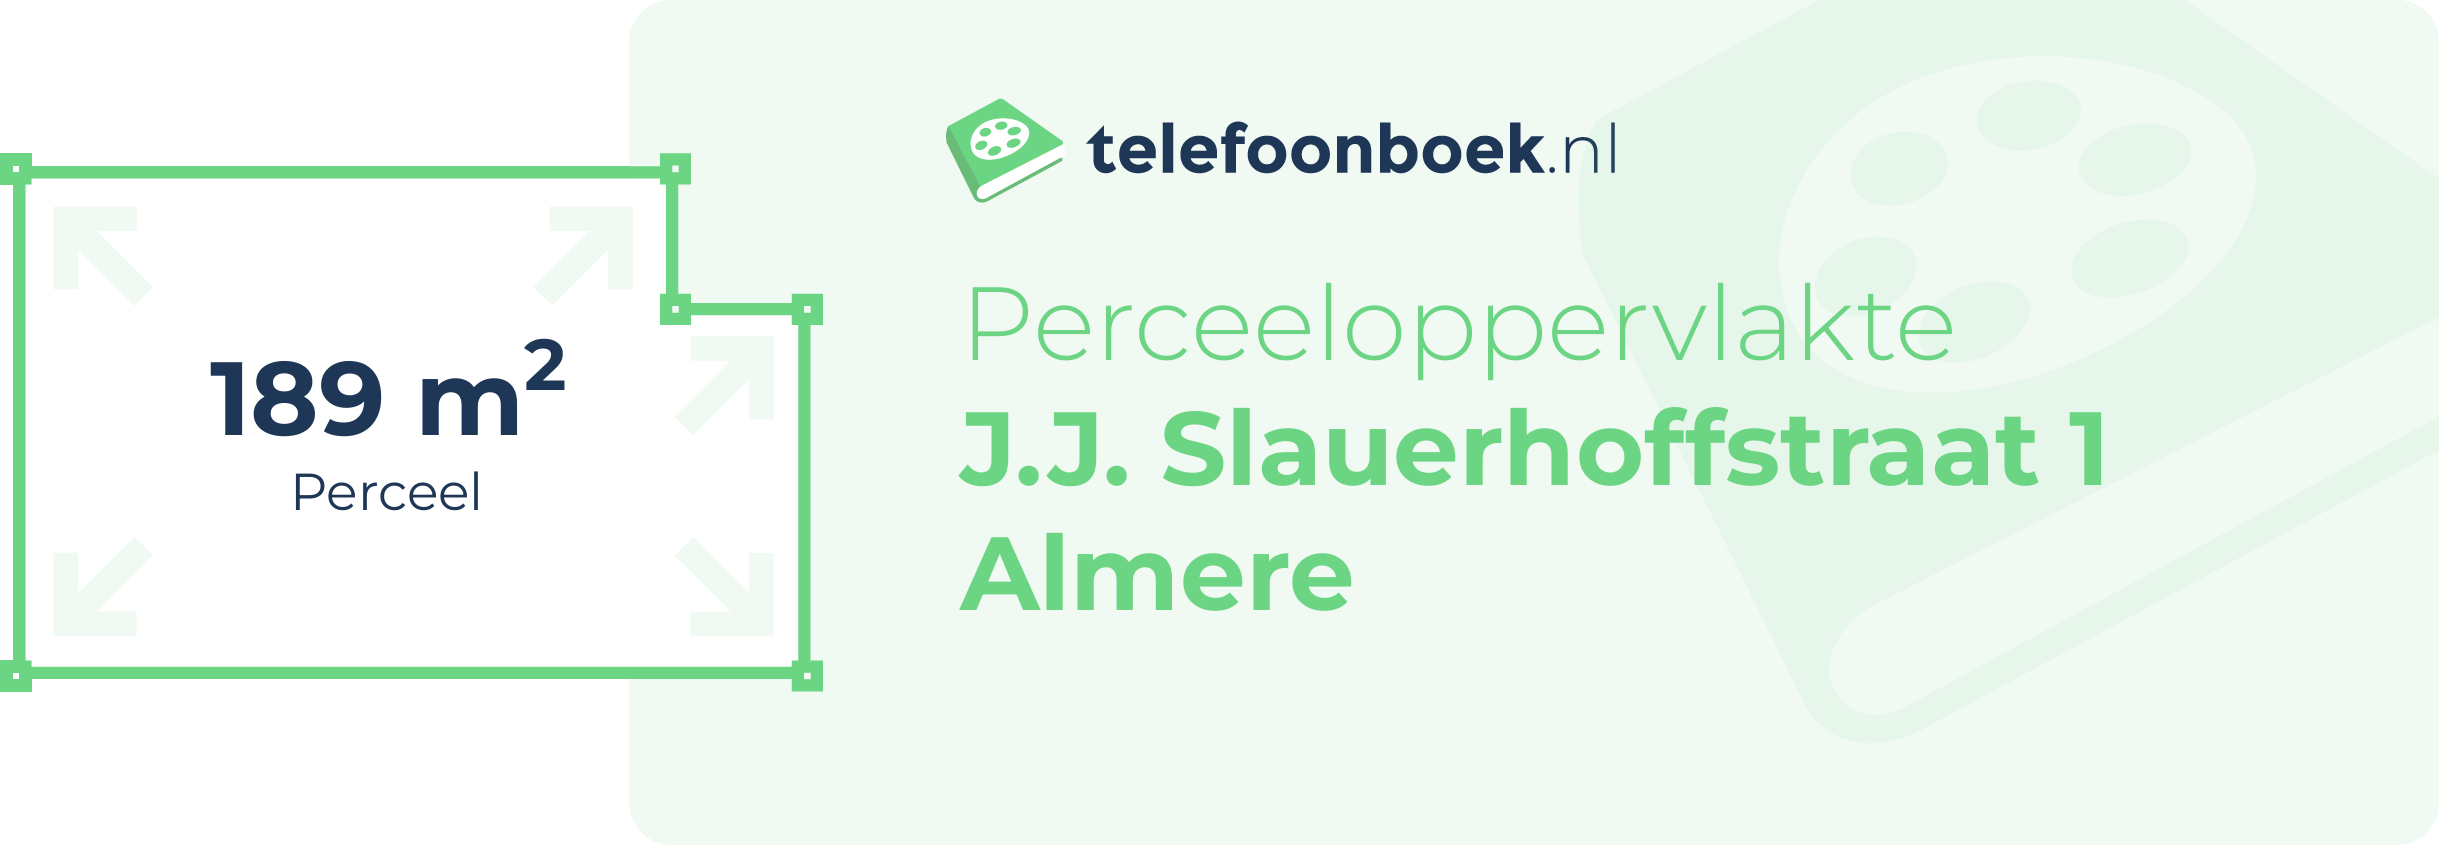 Perceeloppervlakte J.J. Slauerhoffstraat 1 Almere